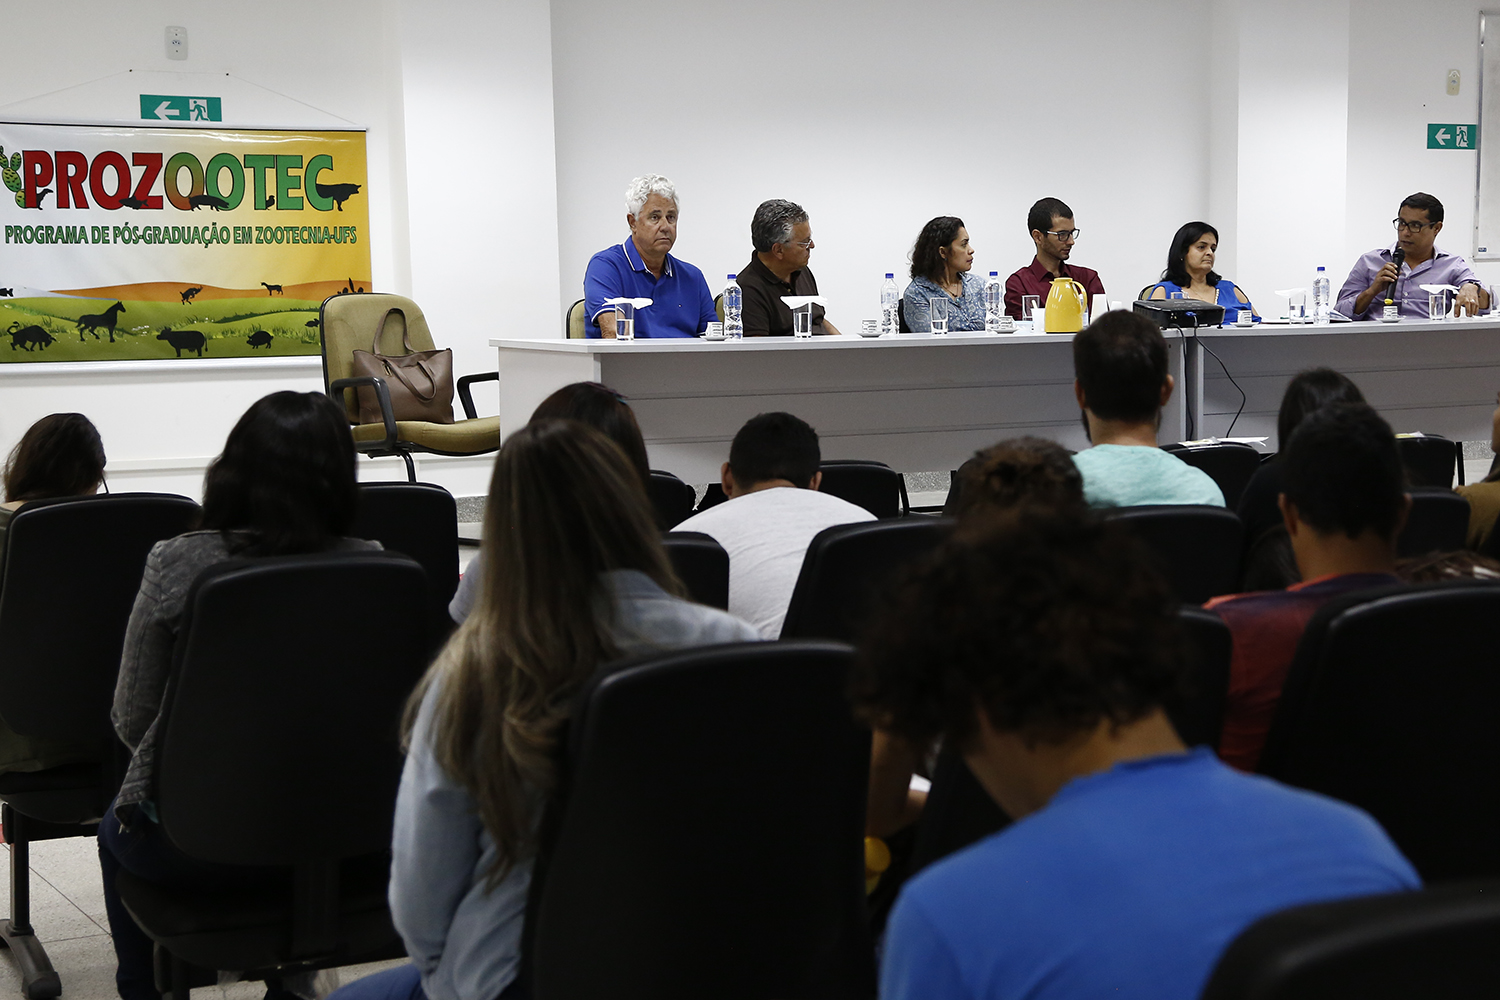 Workshop reuniu professores dos departamentos de Zootecnia, Nutrição, Geografia e Tecnologia Alimentar. (fotos: Dayanne Carvalho (bolsista) e Márcio Santana / Ascom-UFS)